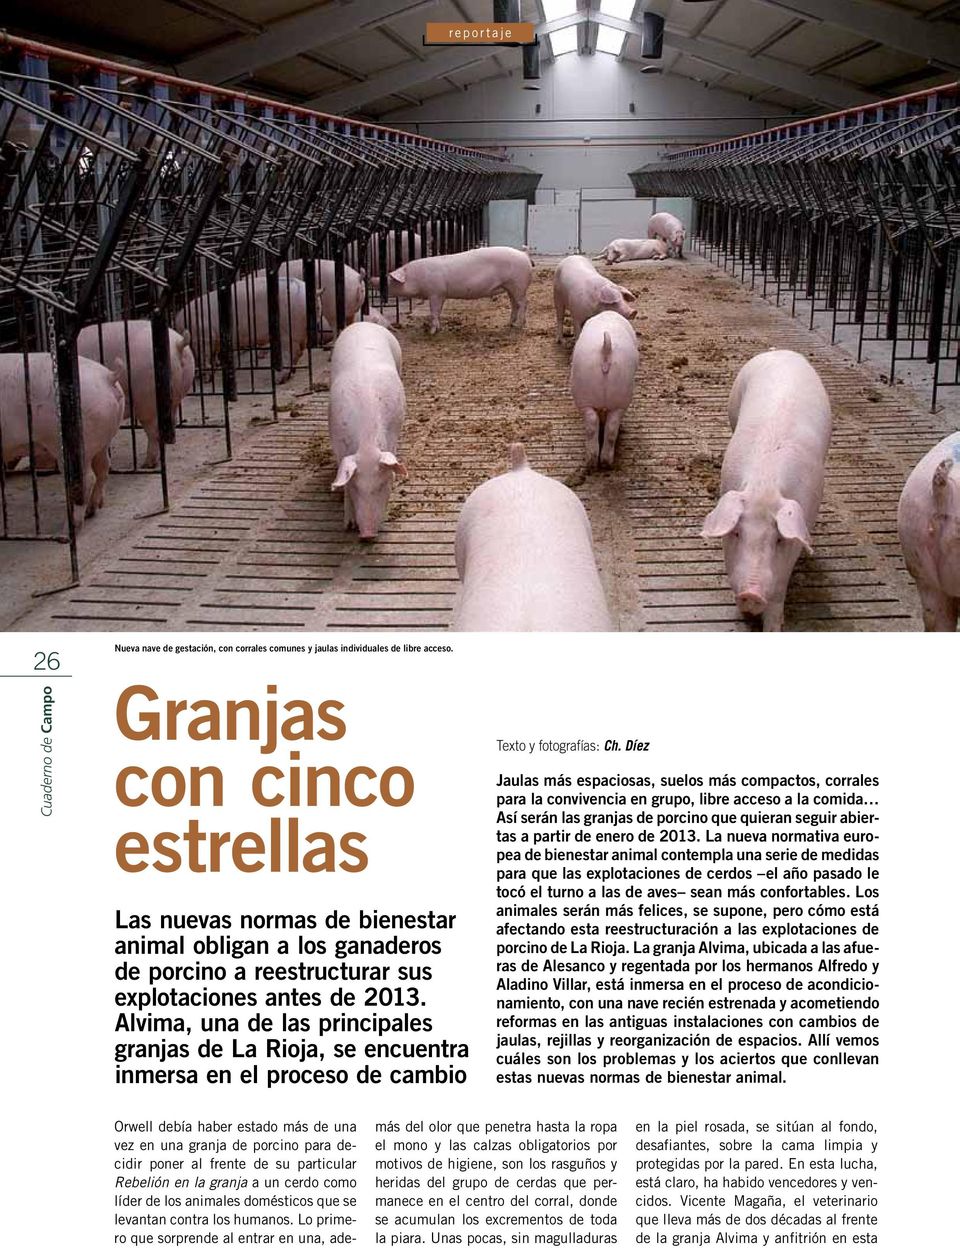 Alvima, una de las principales granjas de La Rioja, se encuentra inmersa en el proceso de cambio Texto y fotografías: Ch.